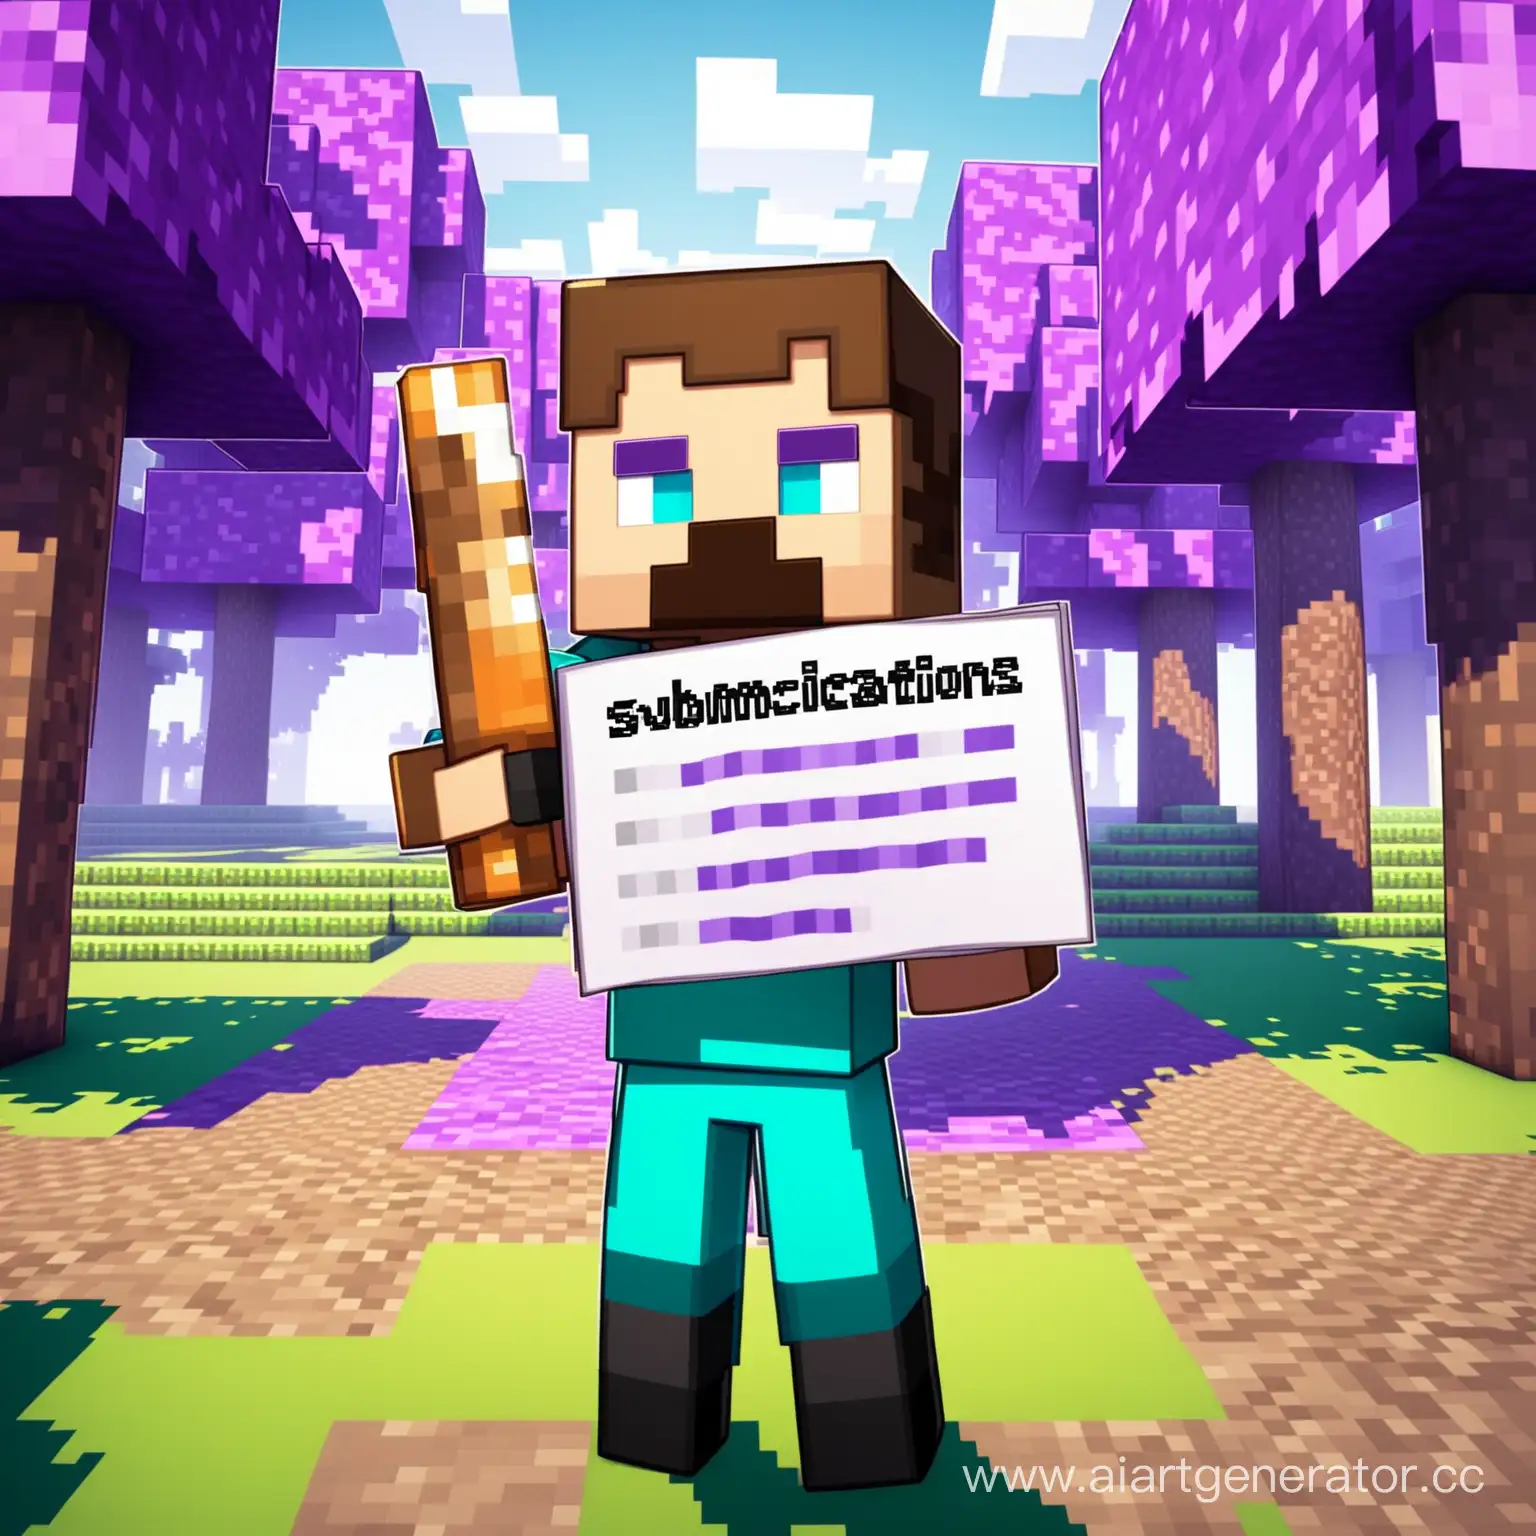 подача заявок, персонаж игры minecraft в полный рост держит лист с текстом, показывая его в камеру, на фоне фиолетовые деревья